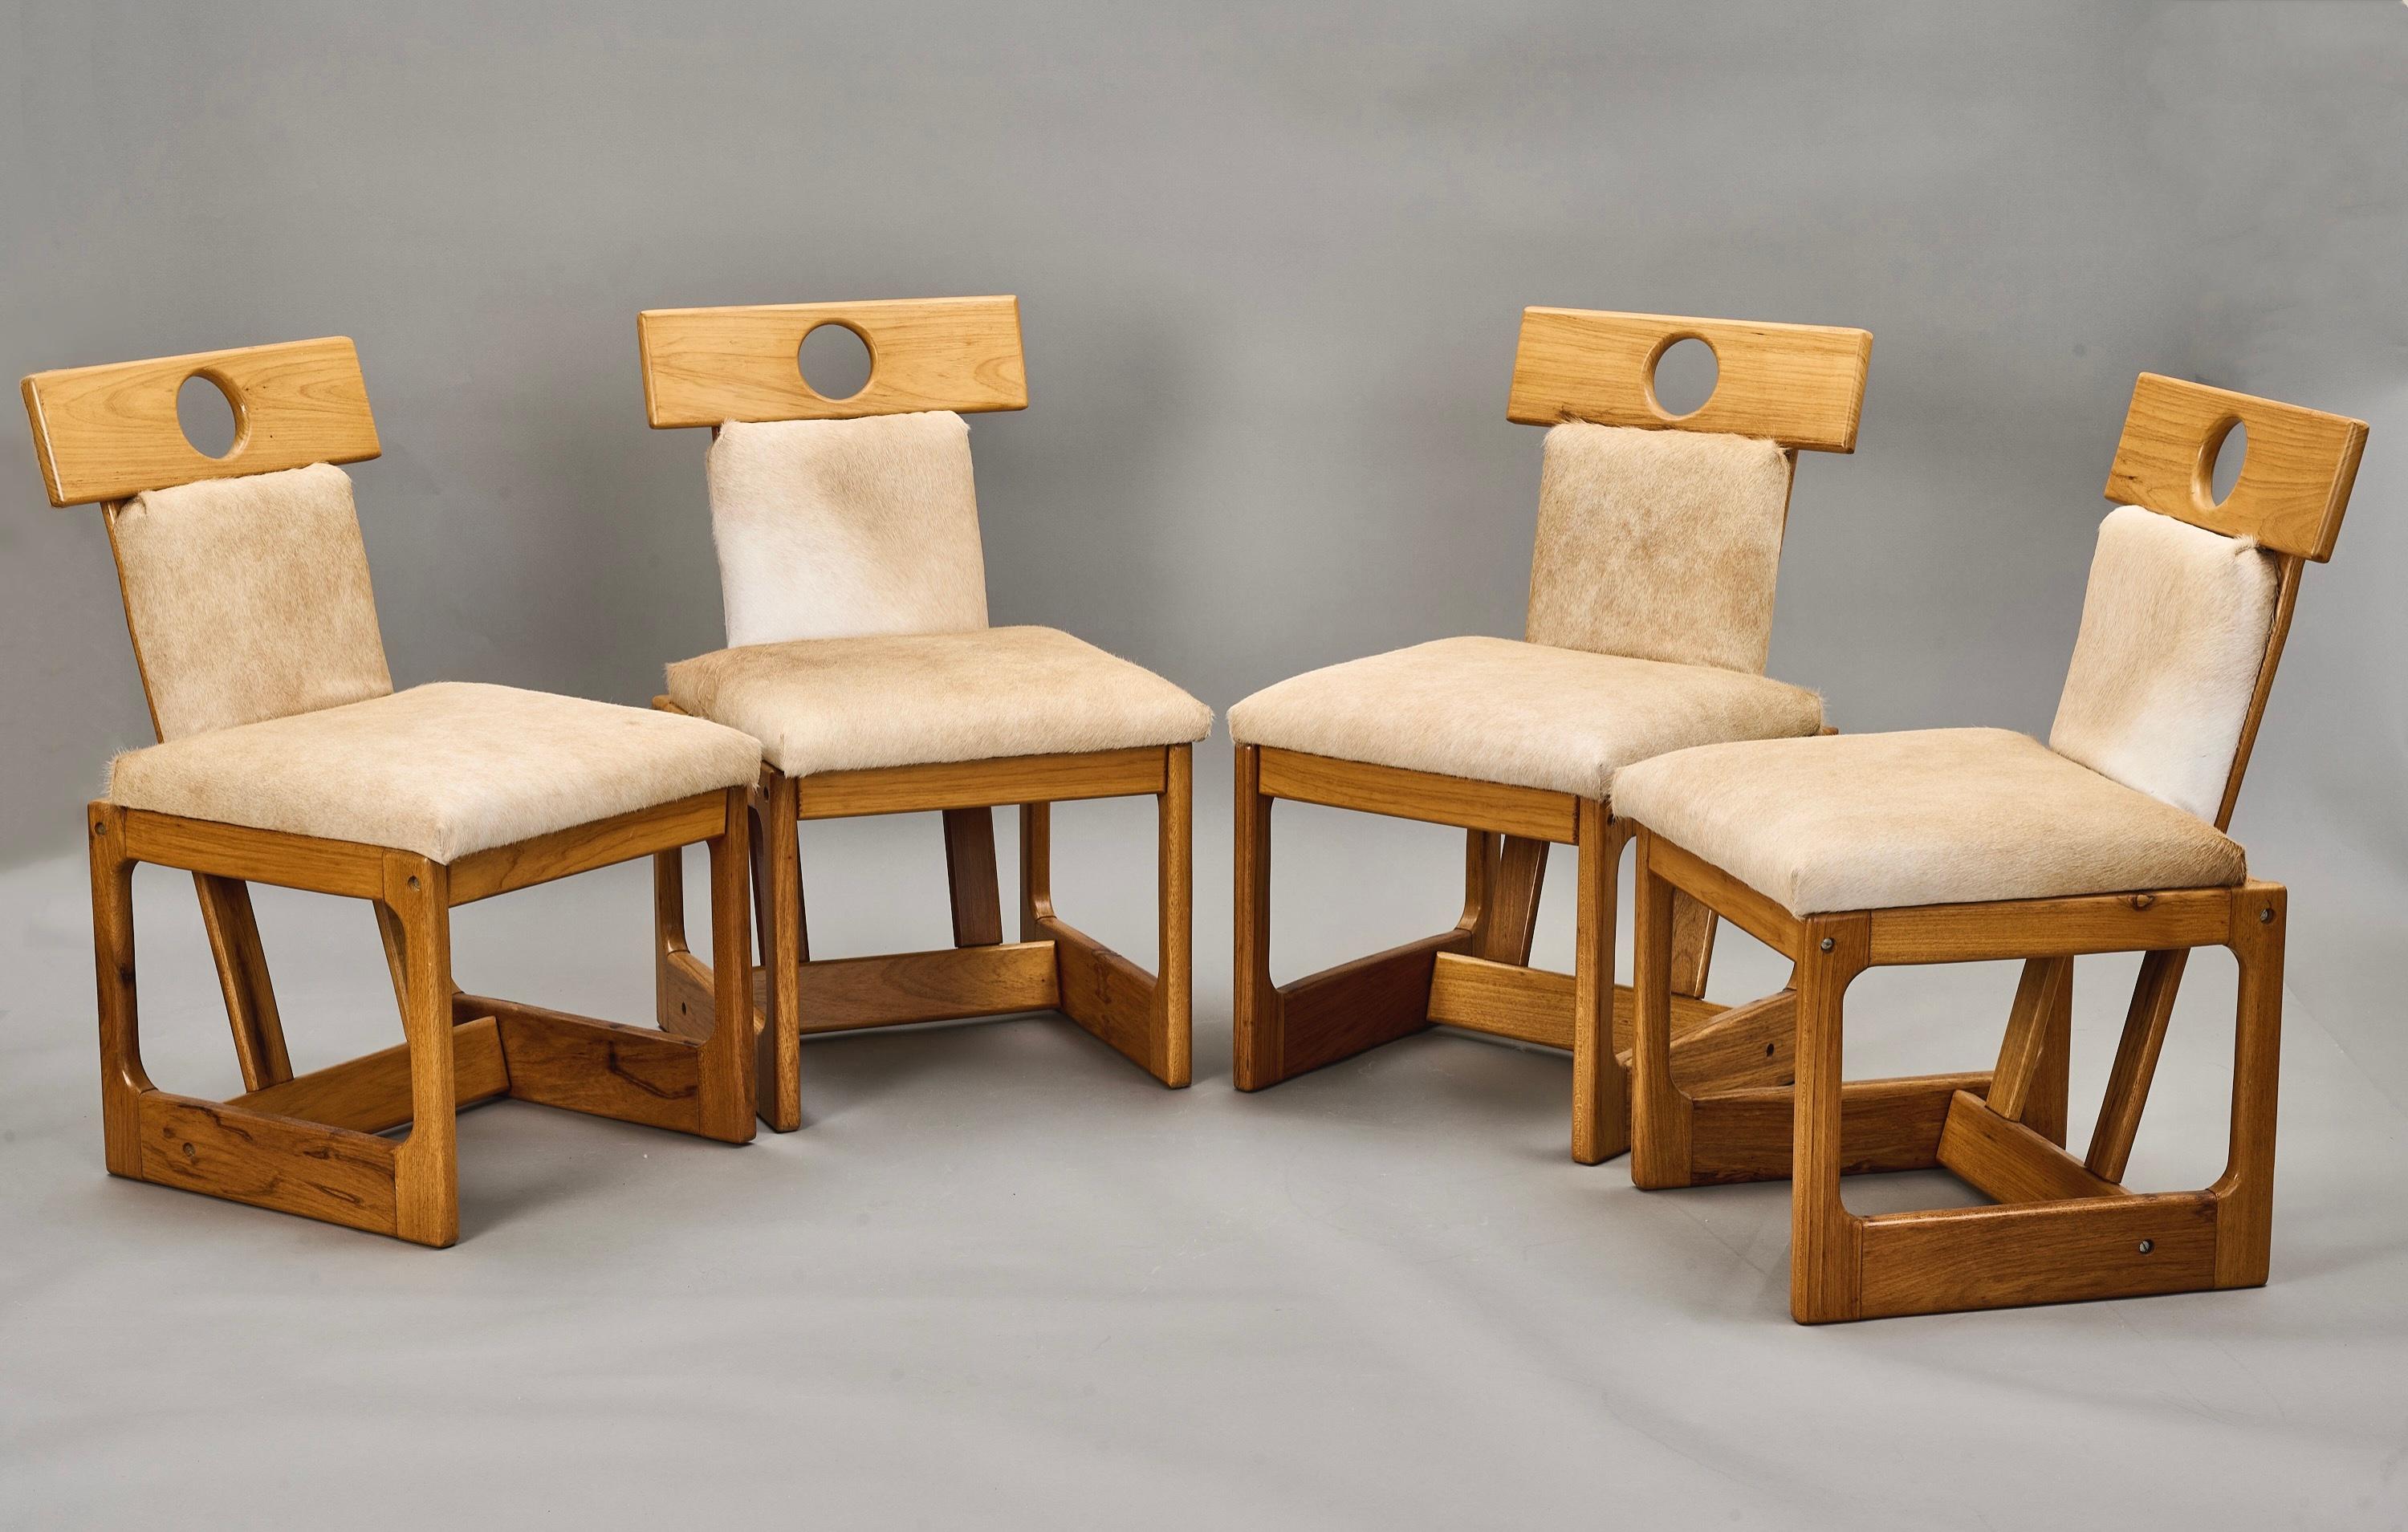 Sergio Rodrigues (1927-2014)

Ensemble de quatre chaises de salle à manger Cuiaba du pionnier du design brésilien Sergio Rodrigues, en bois de caviona recouvert de peau de vache de couleur crème. La forme géométrique des chaises repose sur une paire